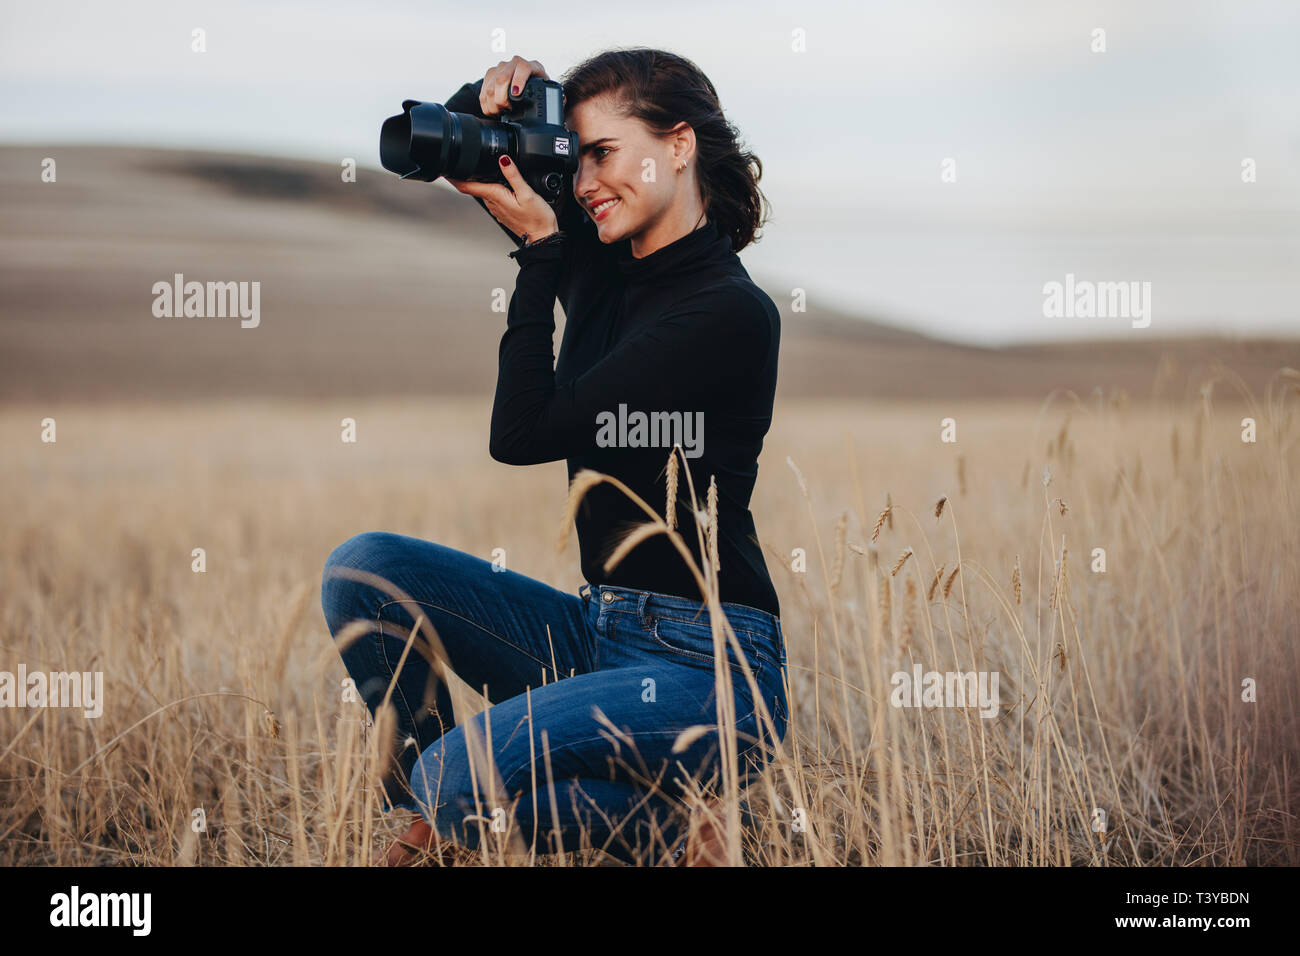 Junge Frau mit DSLR-Kamera für Aufnahmen im Freien. Weiblichen professionellen Fotografen Fotografieren mit einer DSLR-Kamera. Stockfoto